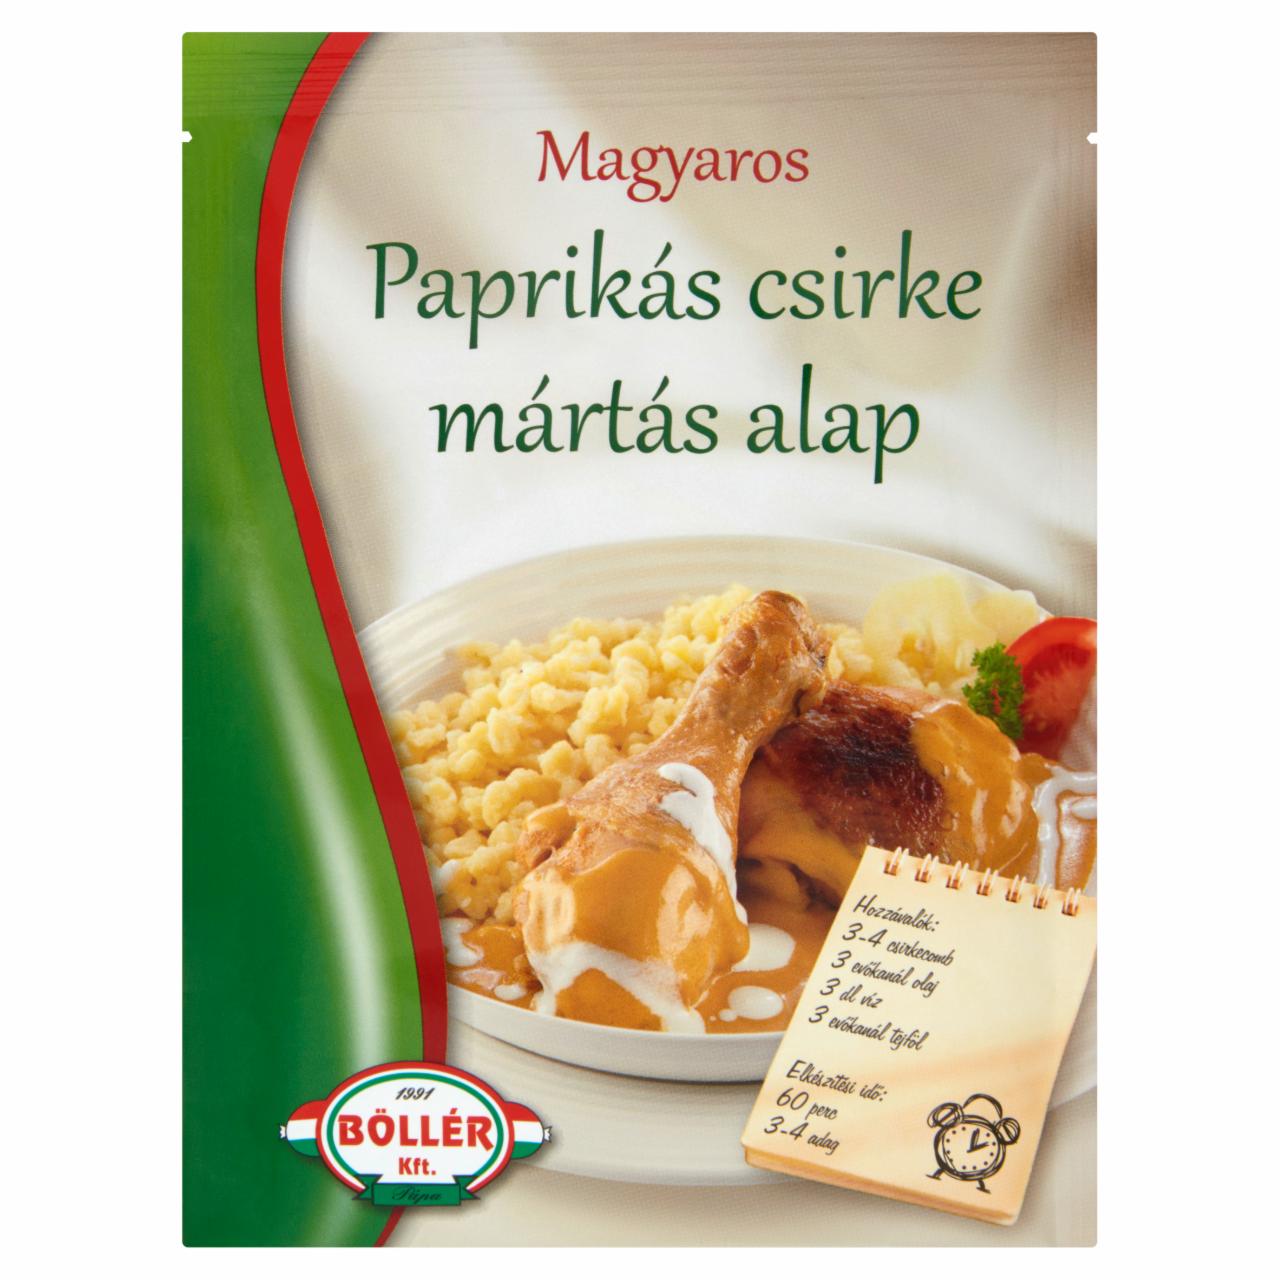 Képek - Böllér magyaros paprikás csirke mártás alap 45 g